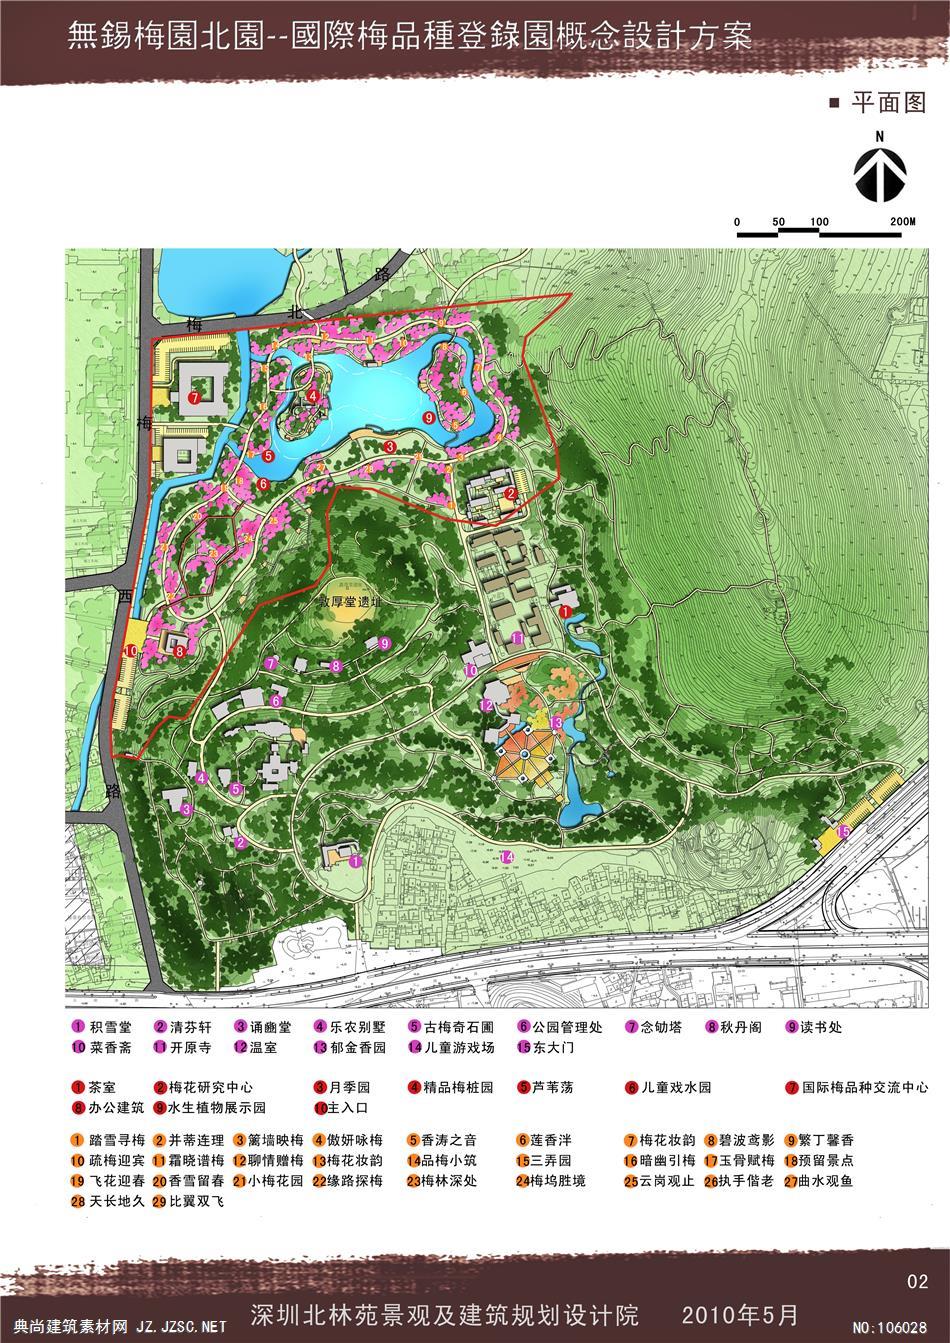 14无锡梅园北园国际梅品种登录园概念设计方案及南园改造概念设计方案